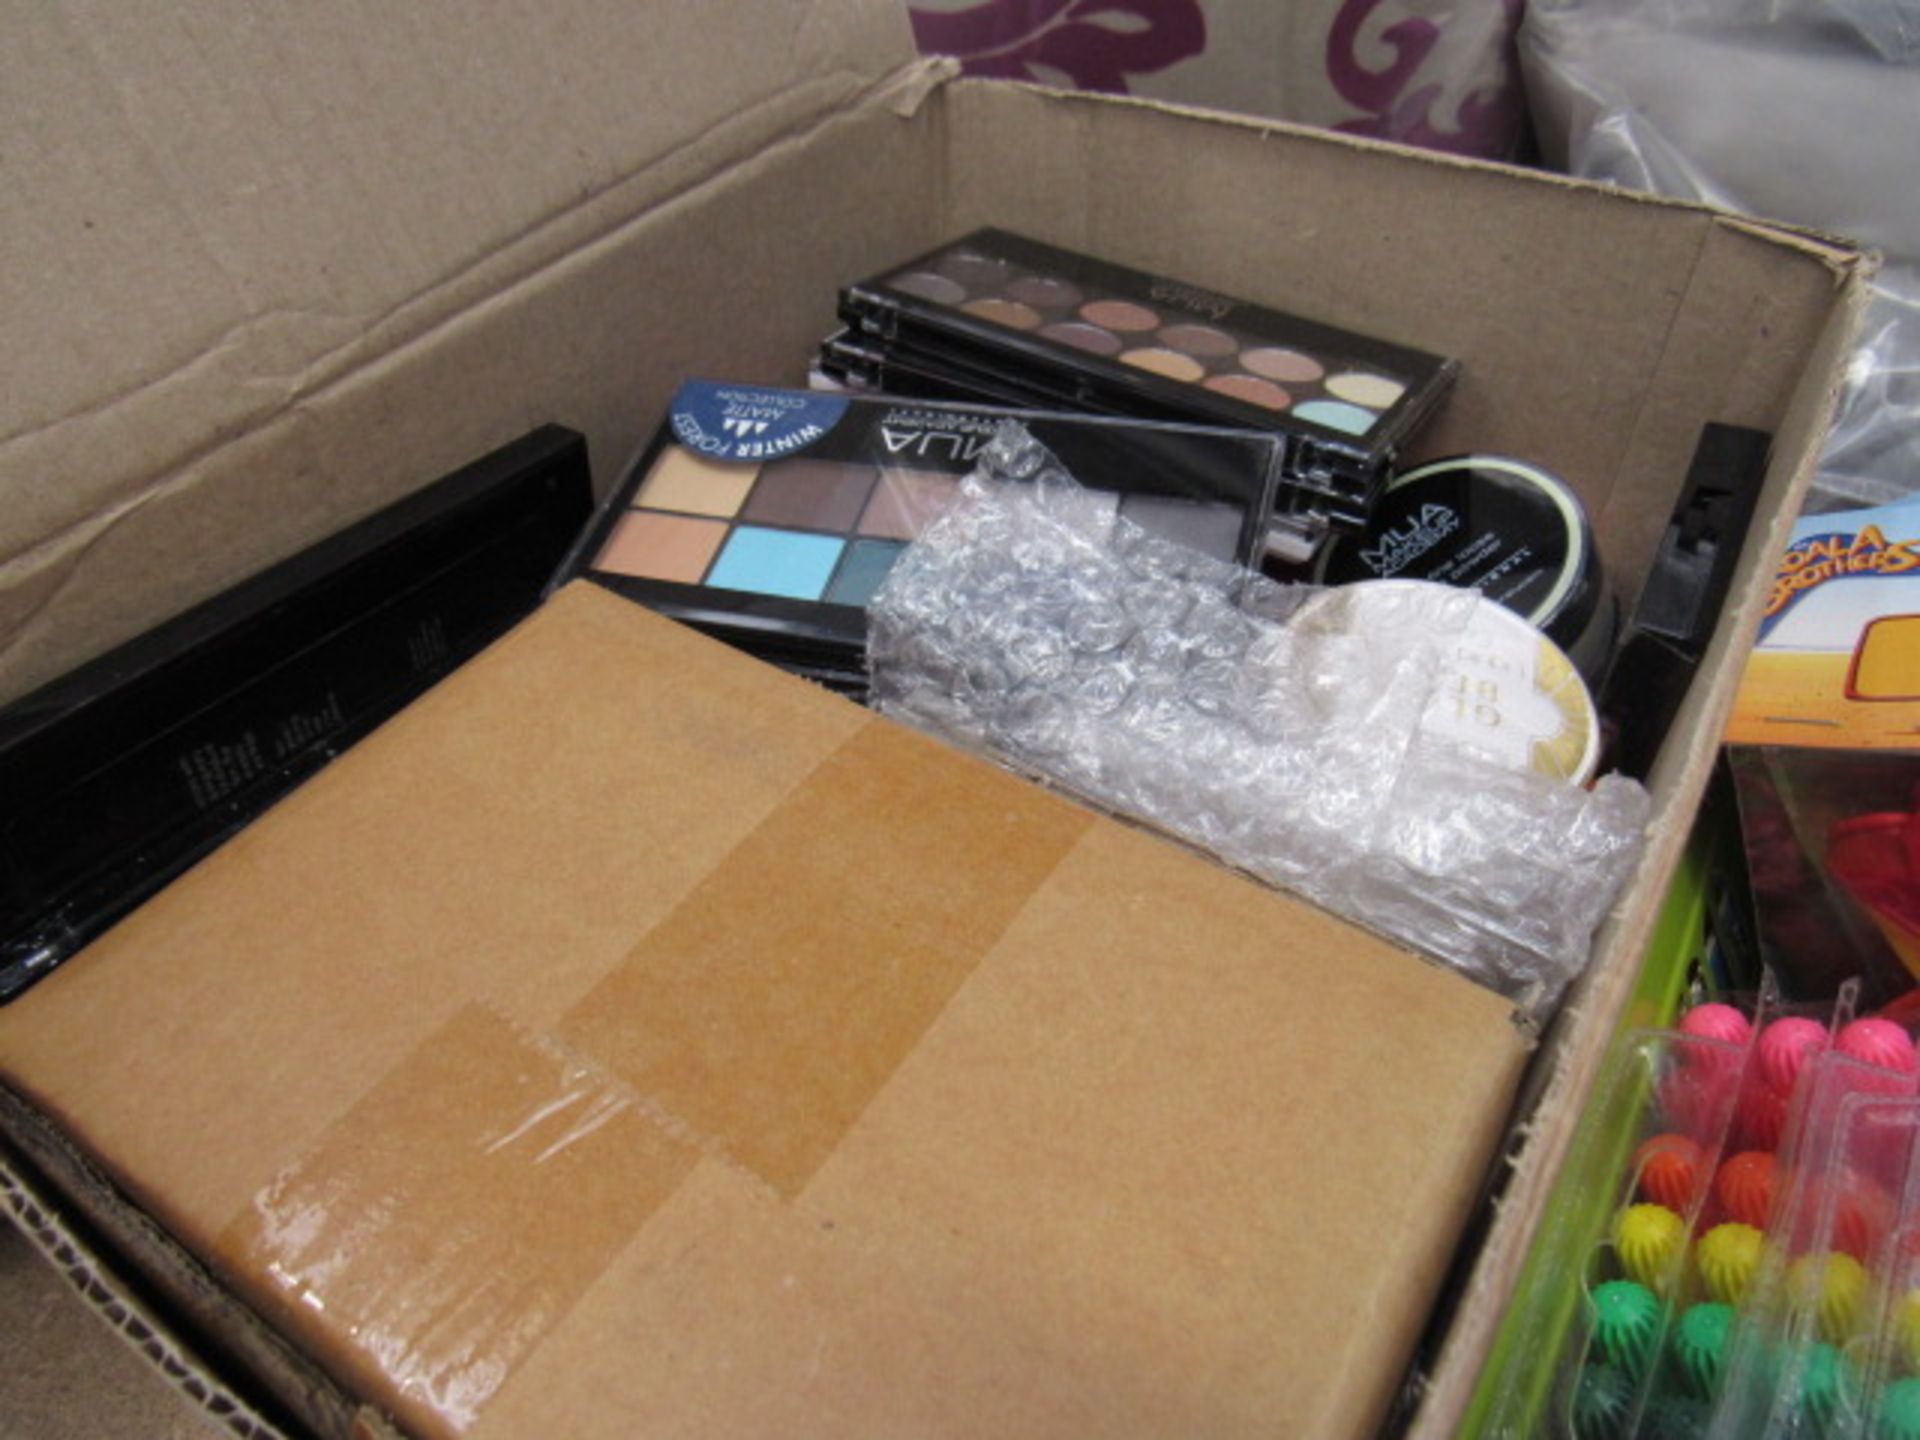 Box containing various makeup sets, glow bean liquid highlights, etc